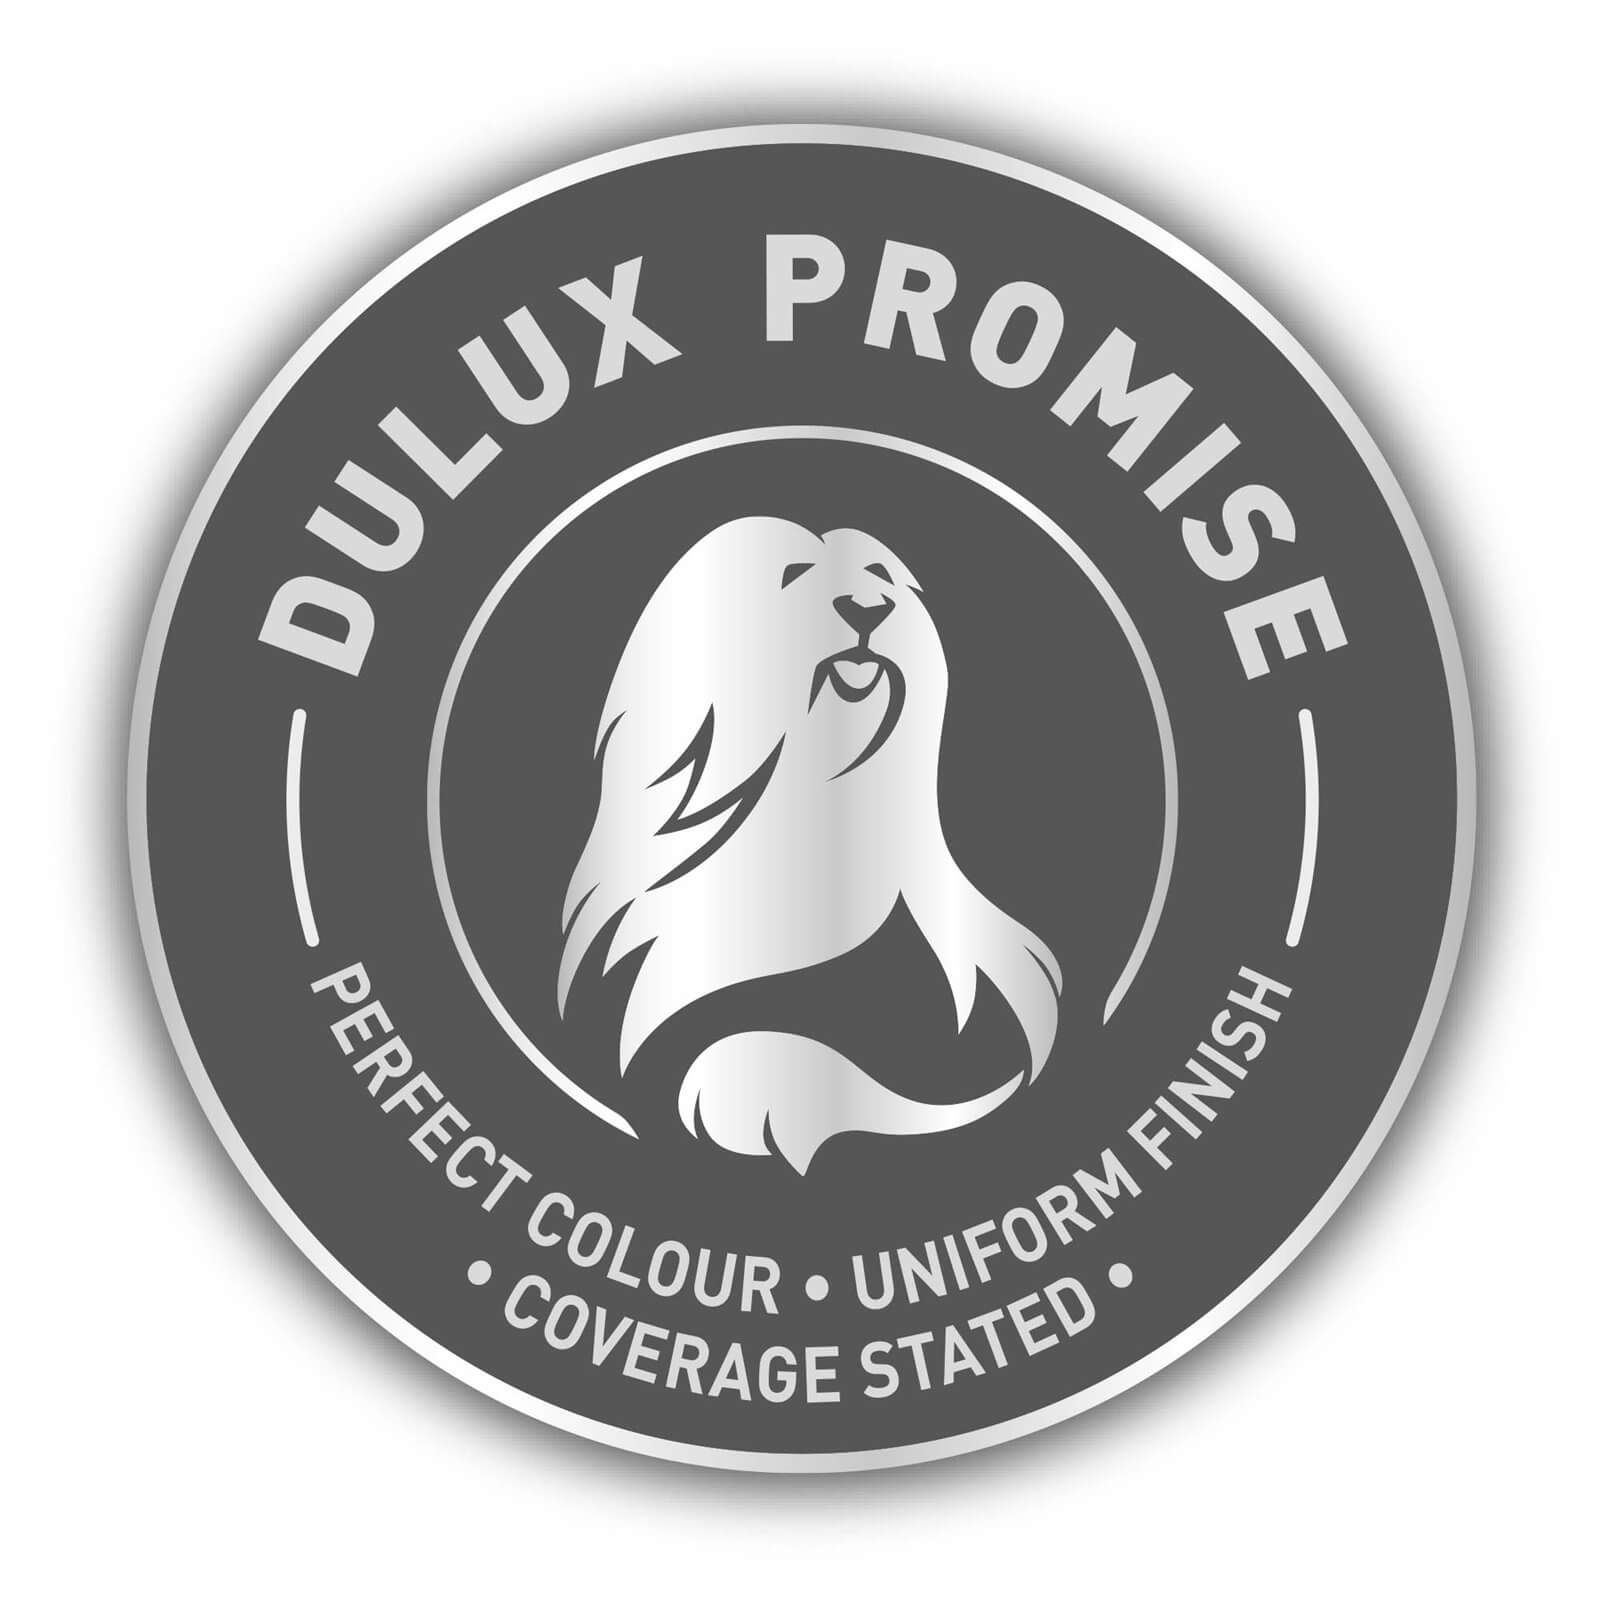 Dulux Easycare Washable & Tough Matt Paint Soft Truffle - 2.5L